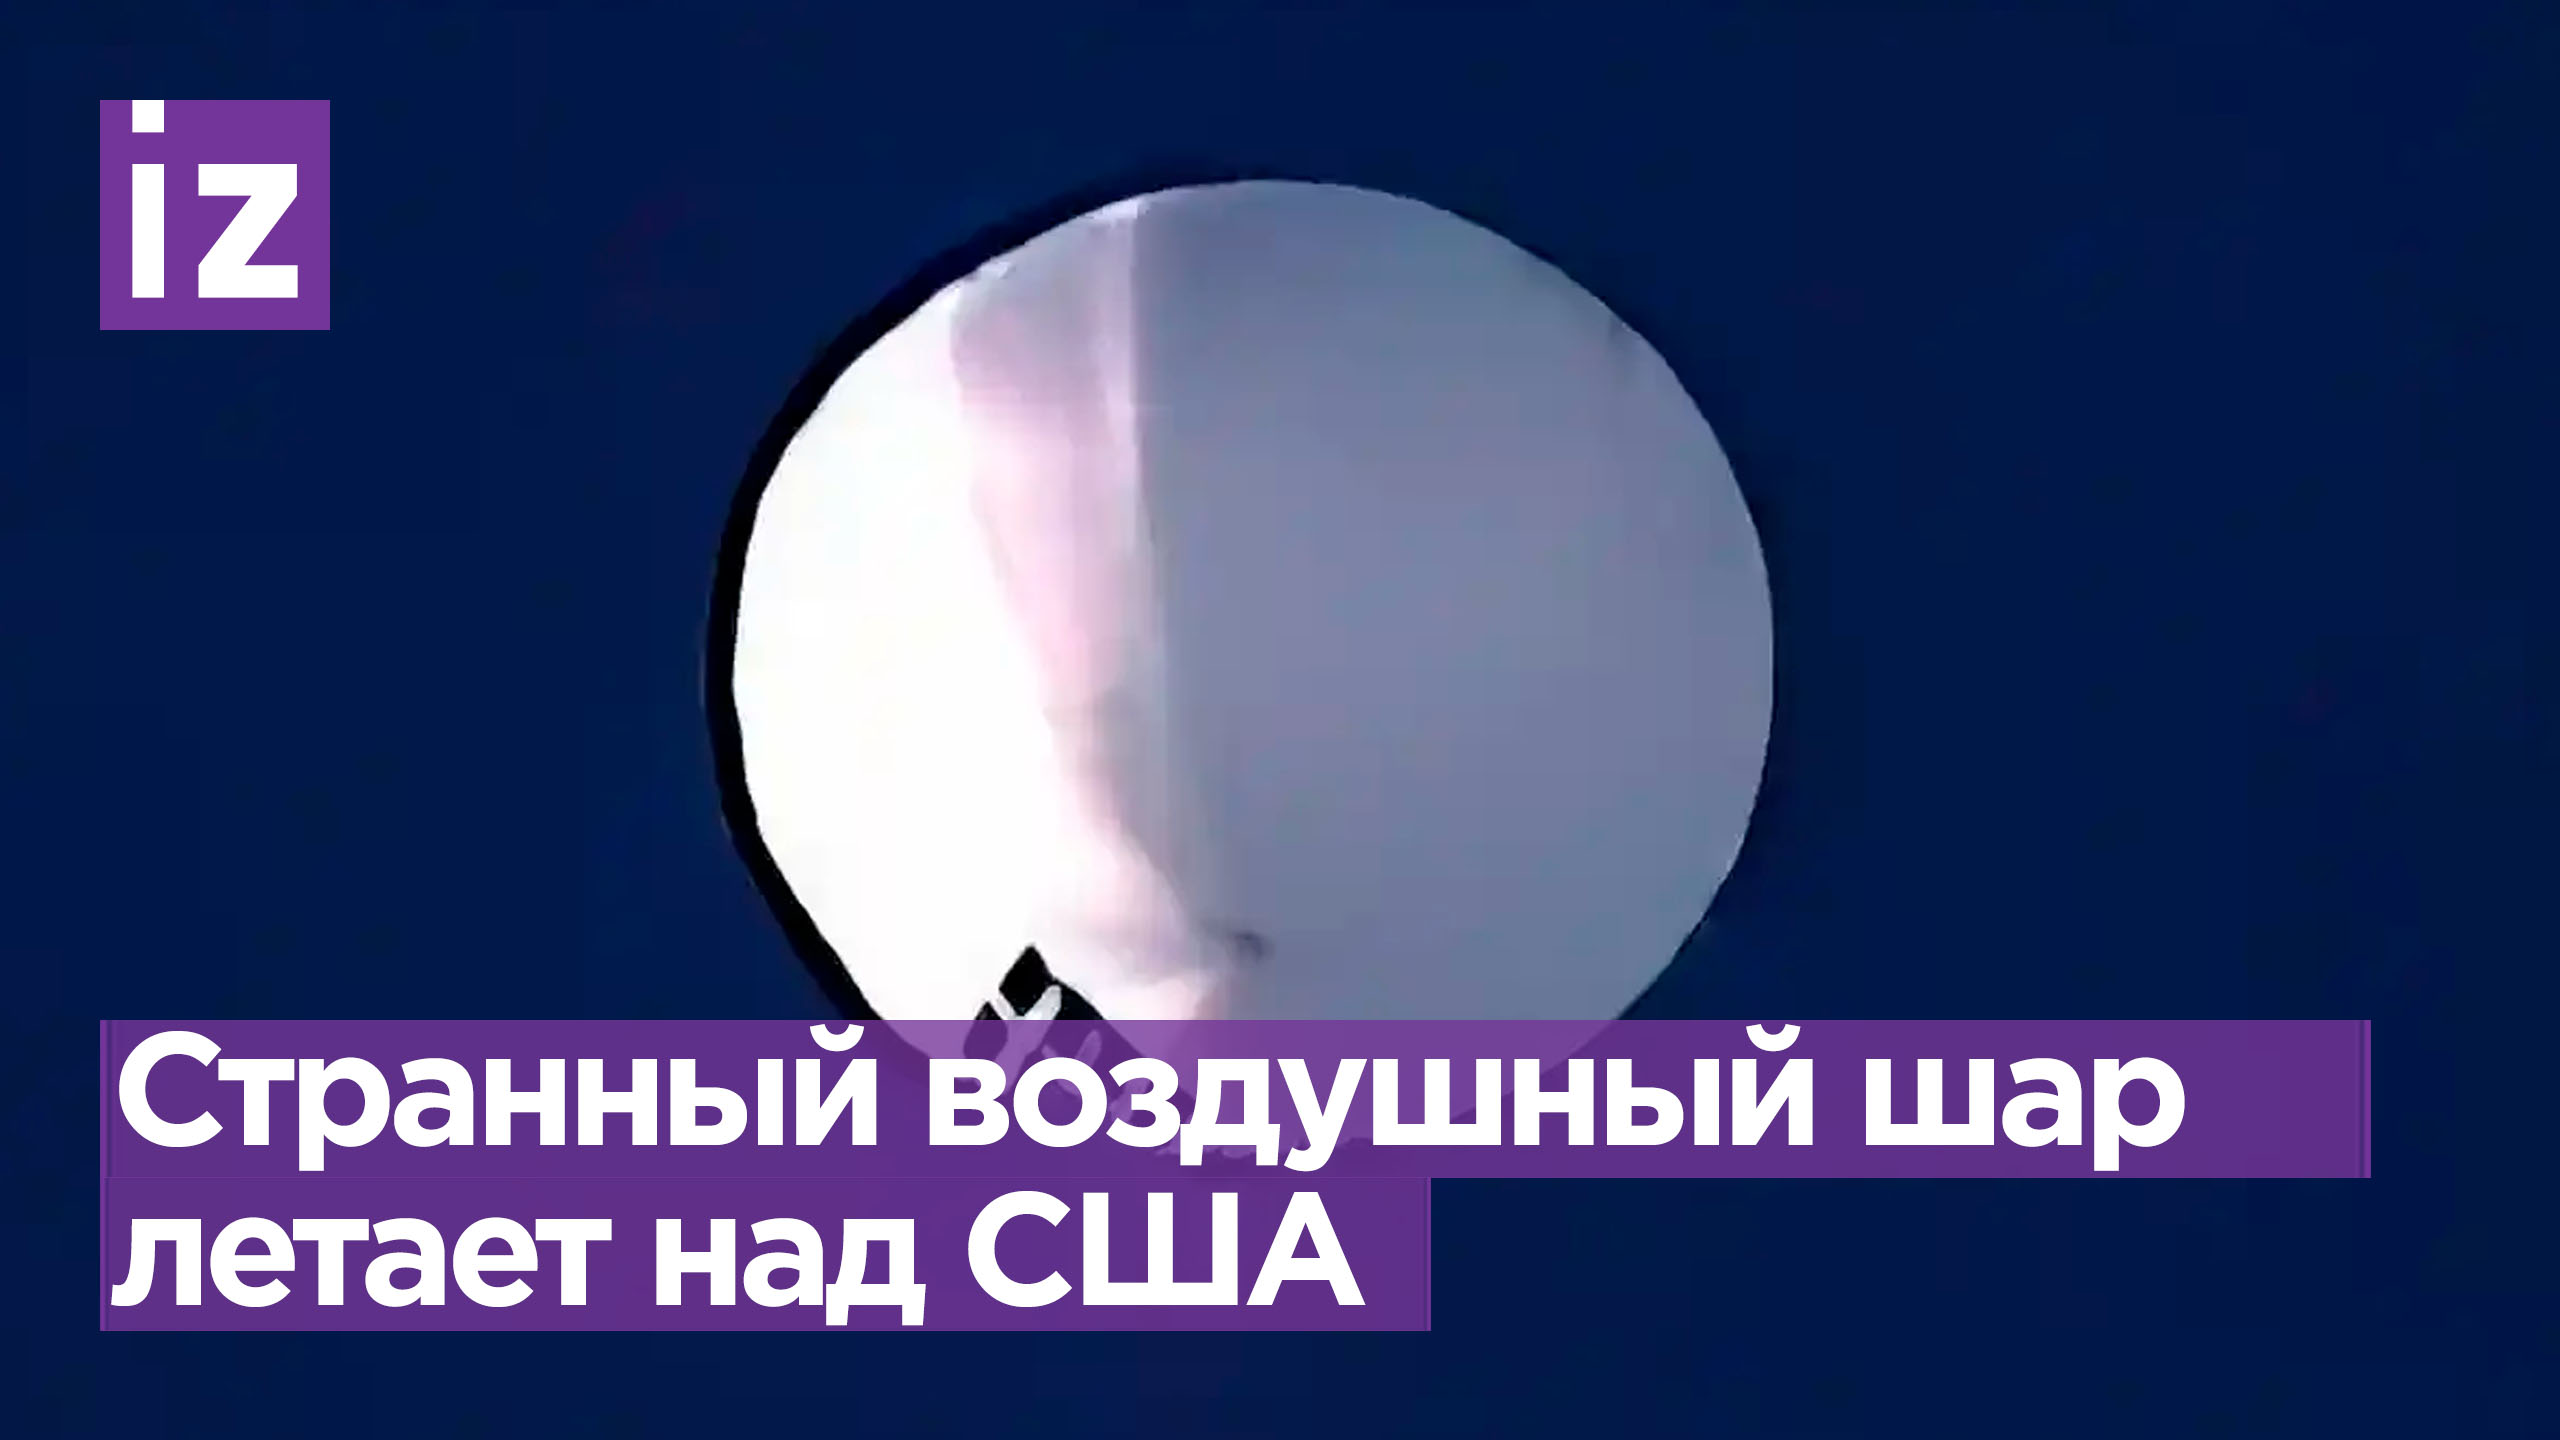 «Китайский воздушный шар» летает в стратосфере над США / Известия